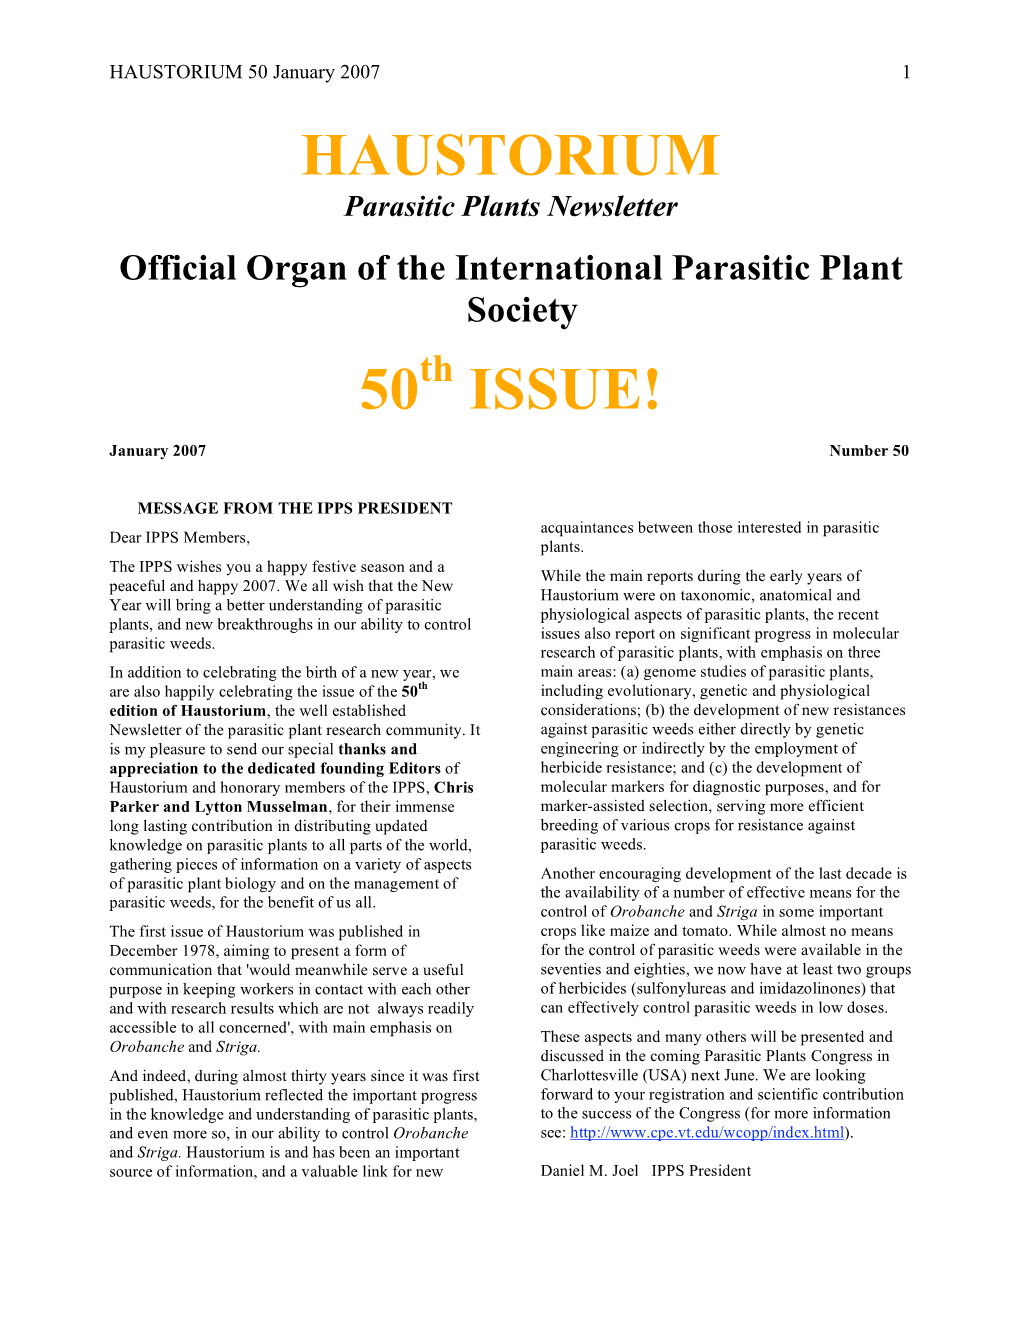 Haustorium 50 Issue!